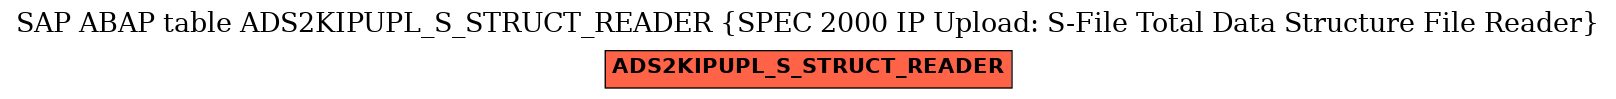 E-R Diagram for table ADS2KIPUPL_S_STRUCT_READER (SPEC 2000 IP Upload: S-File Total Data Structure File Reader)